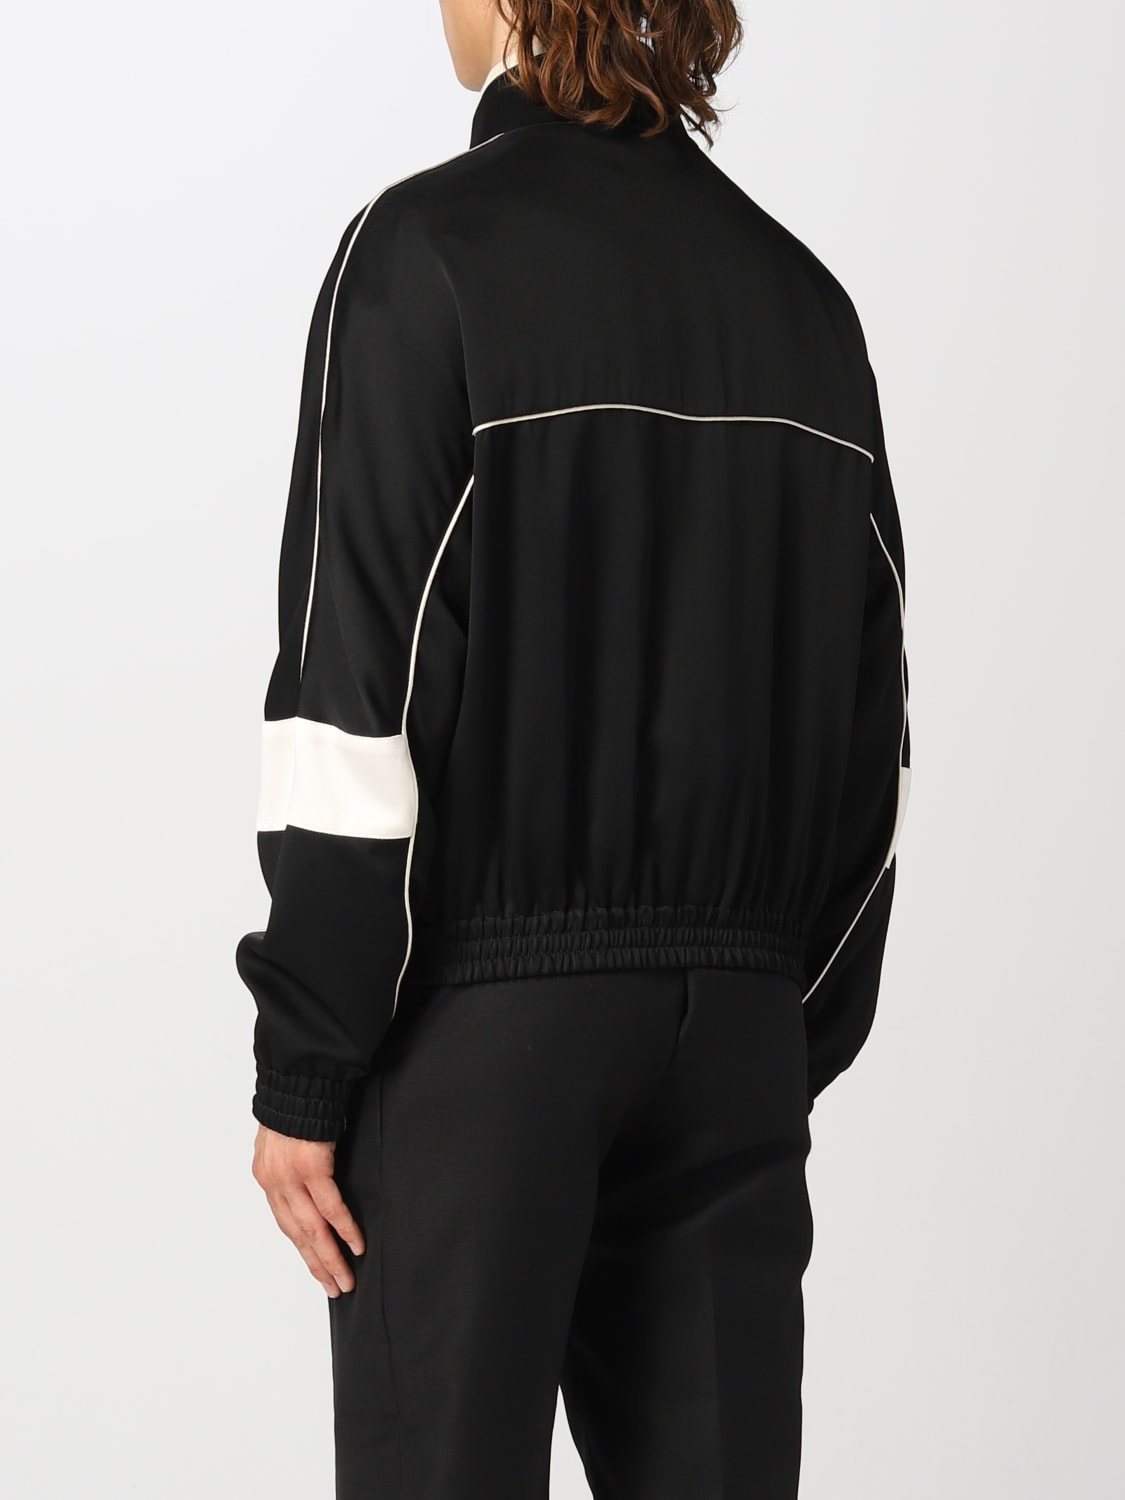 SAINT LAURENT: jacket for man - Black | Saint Laurent jacket ...